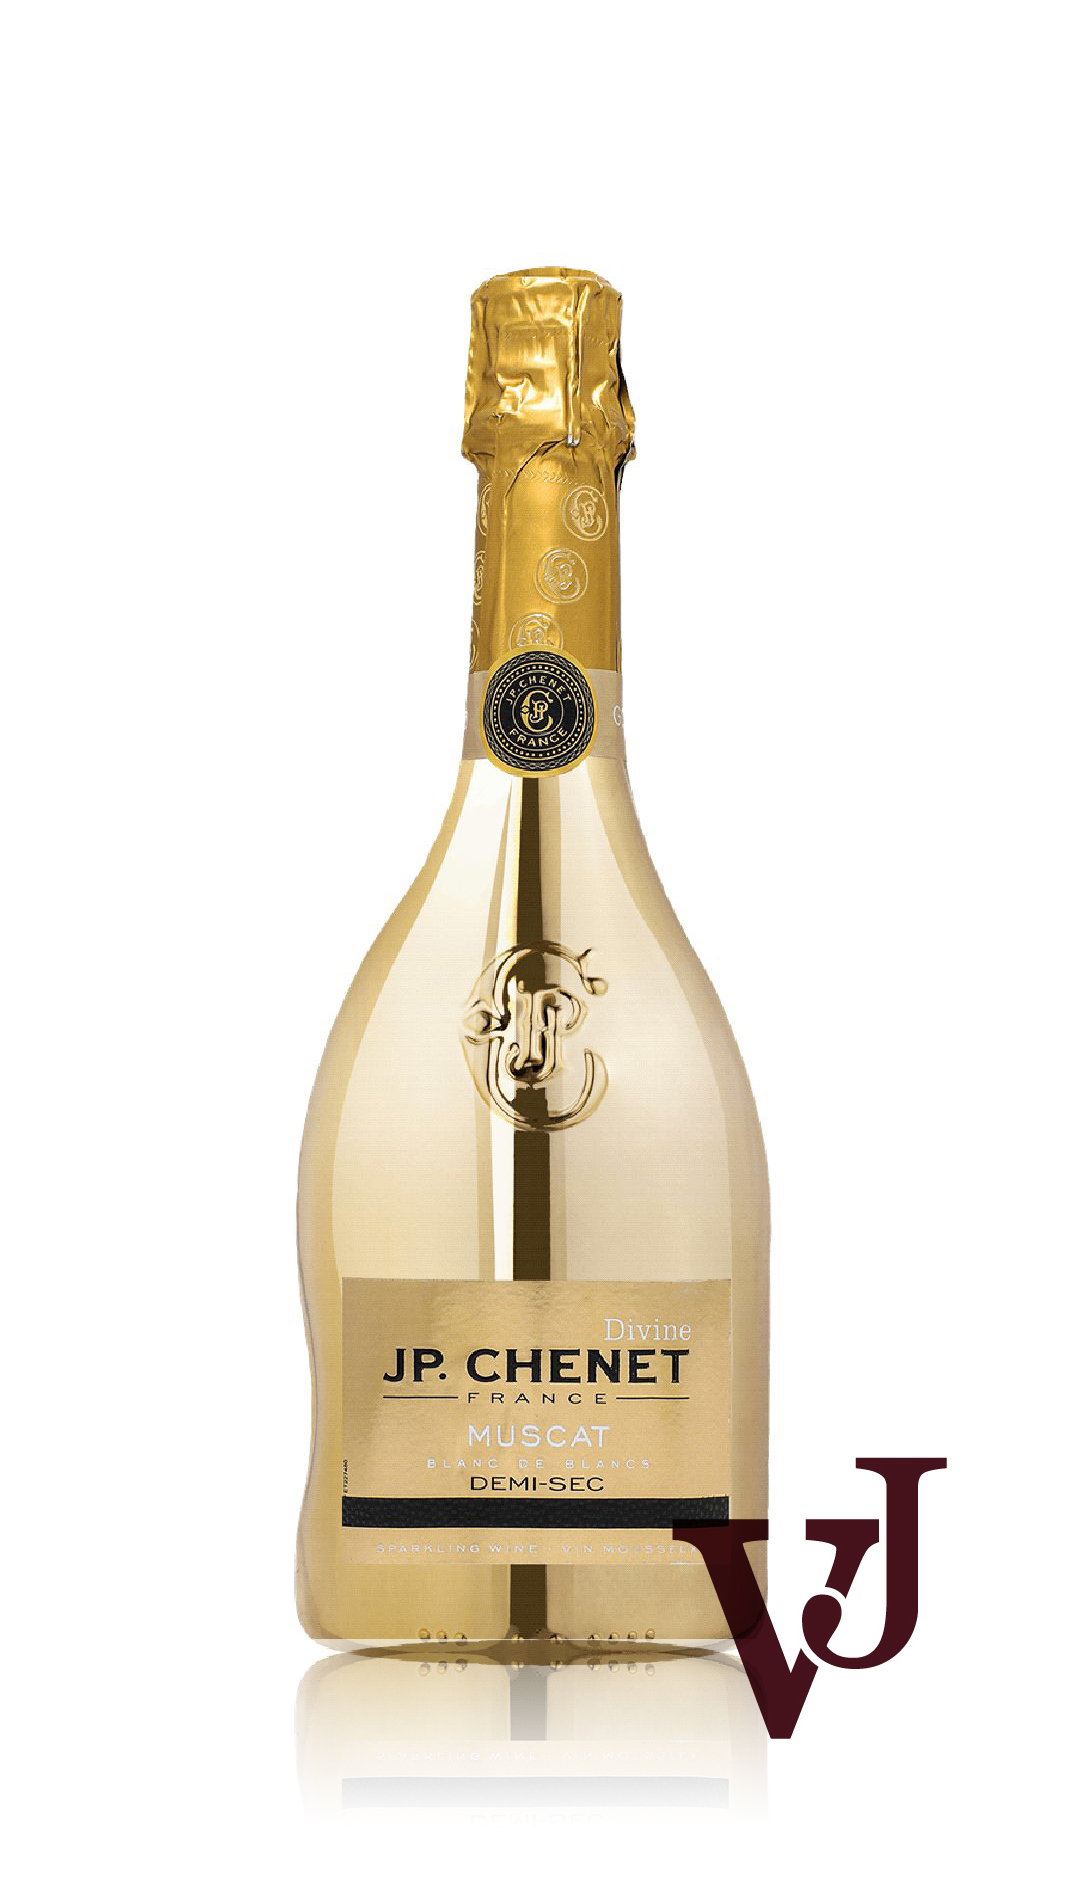 Mousserande Vin - JP Chenet Gold Sparkling Demi-sec artikel nummer 7924001 från producenten Les Grand Chais de France från området Frankrike